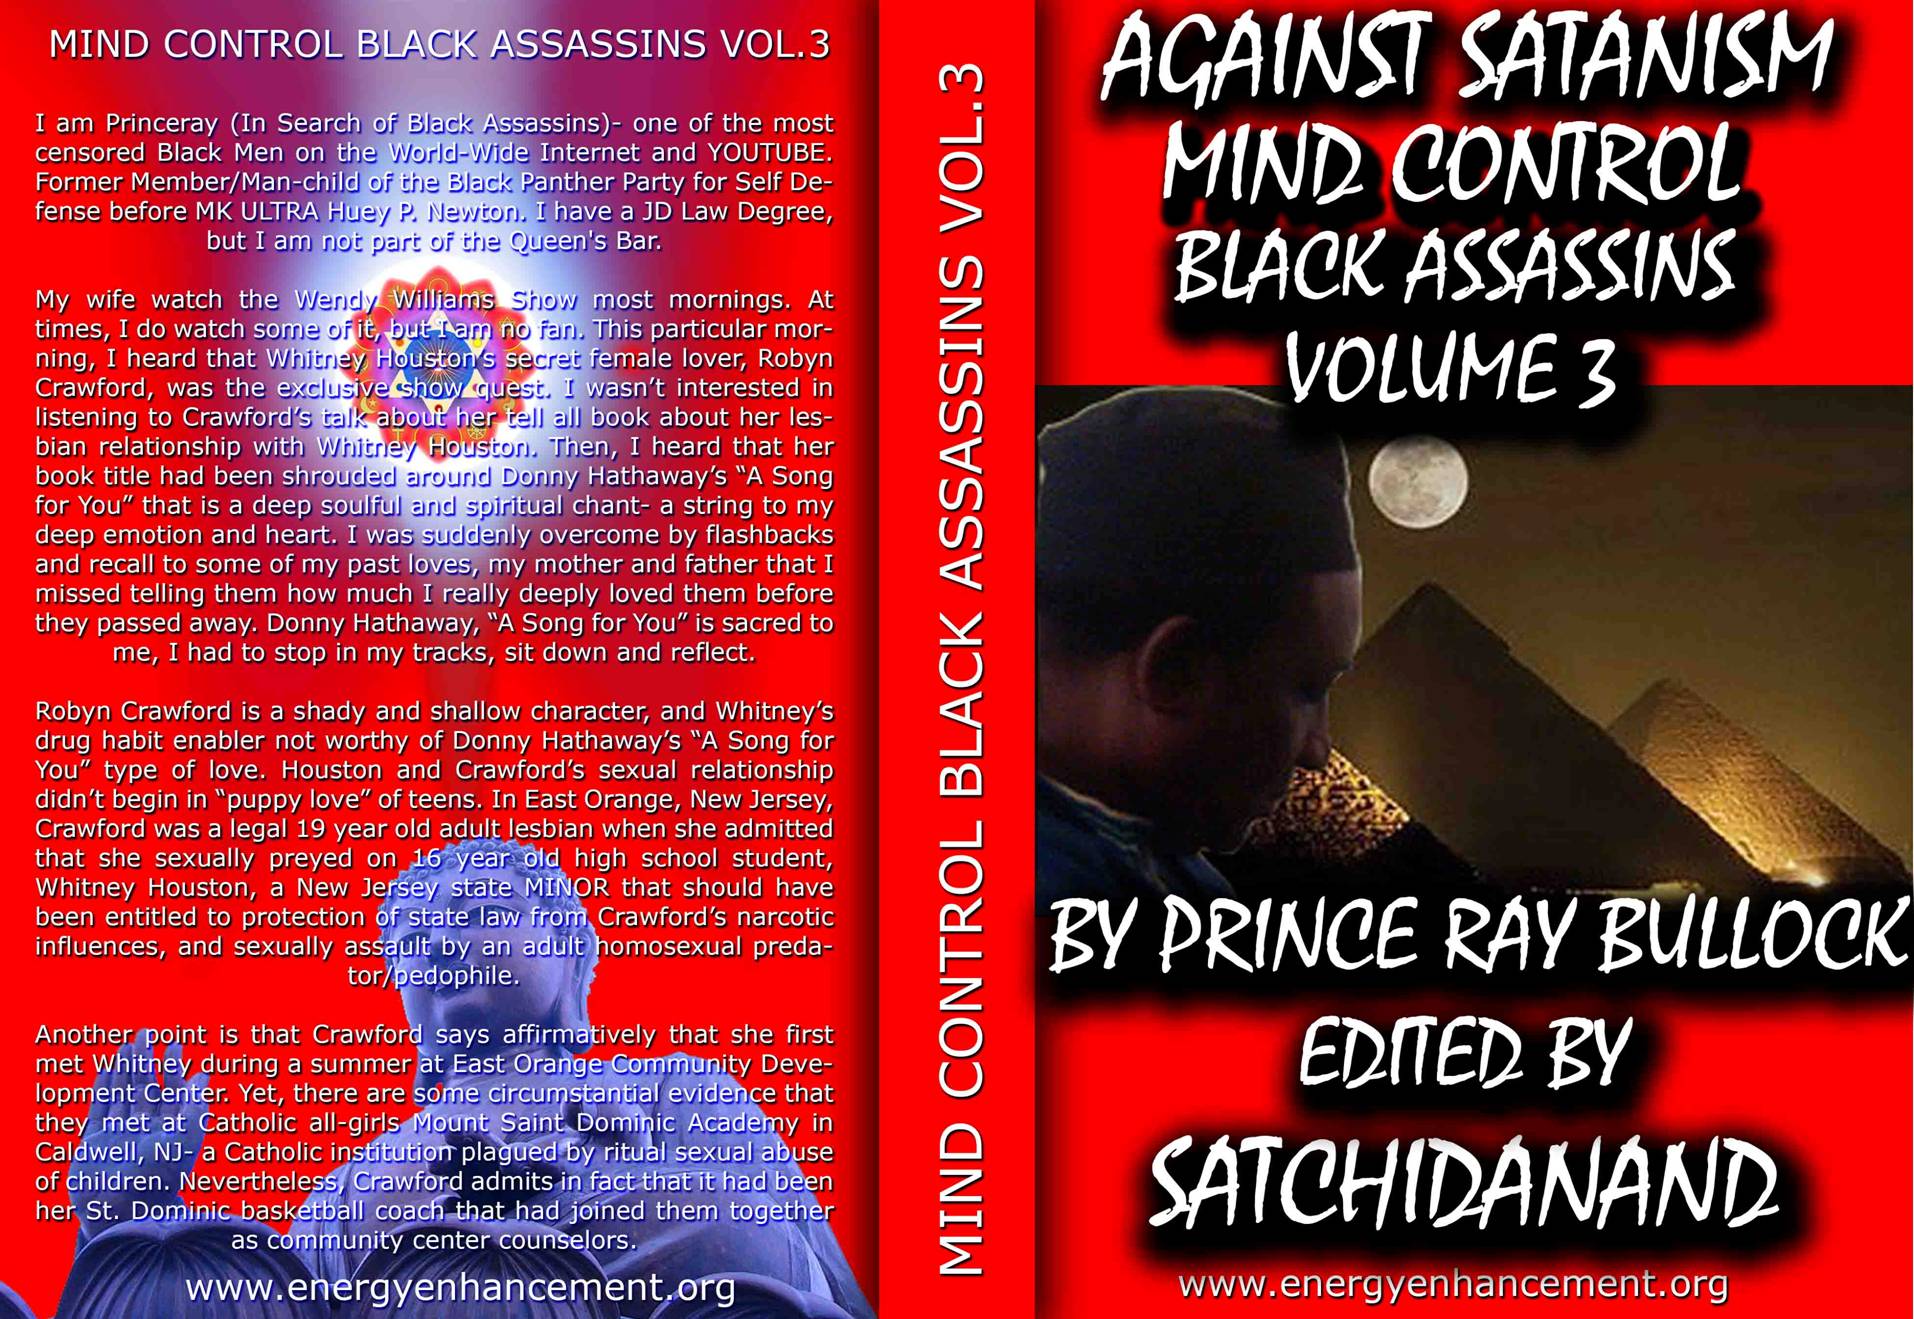 Description: C:\wnew\Sacred-Energy\Black-Assassins-3\full.jpg